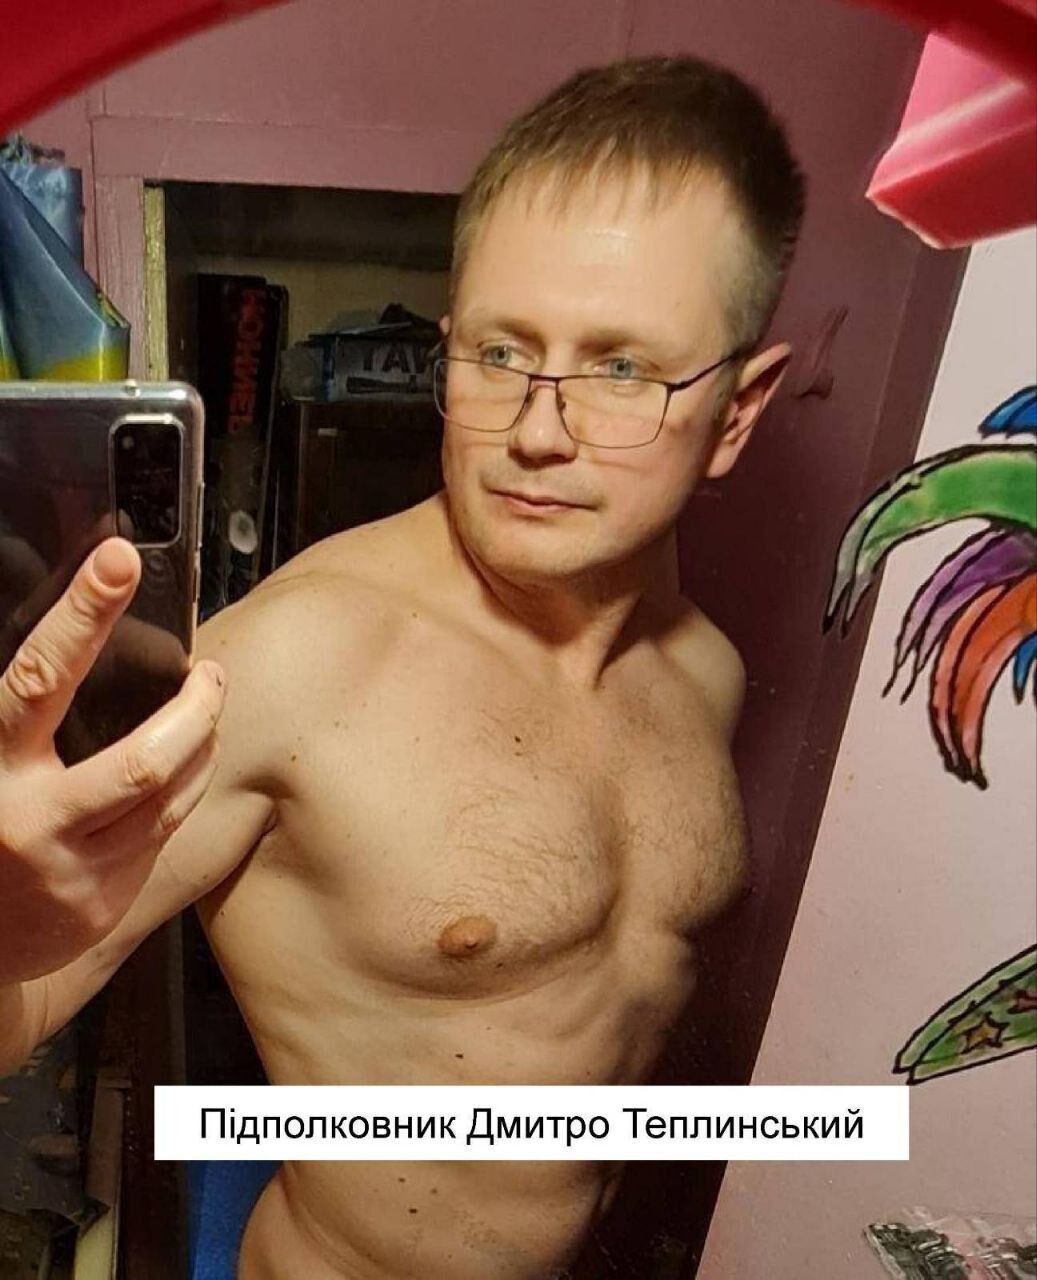 Наталья Теплинская фото – пропагандисты Путина пожаловались на листовки ВСУ  и влипли в скандал | OBOZ.UA